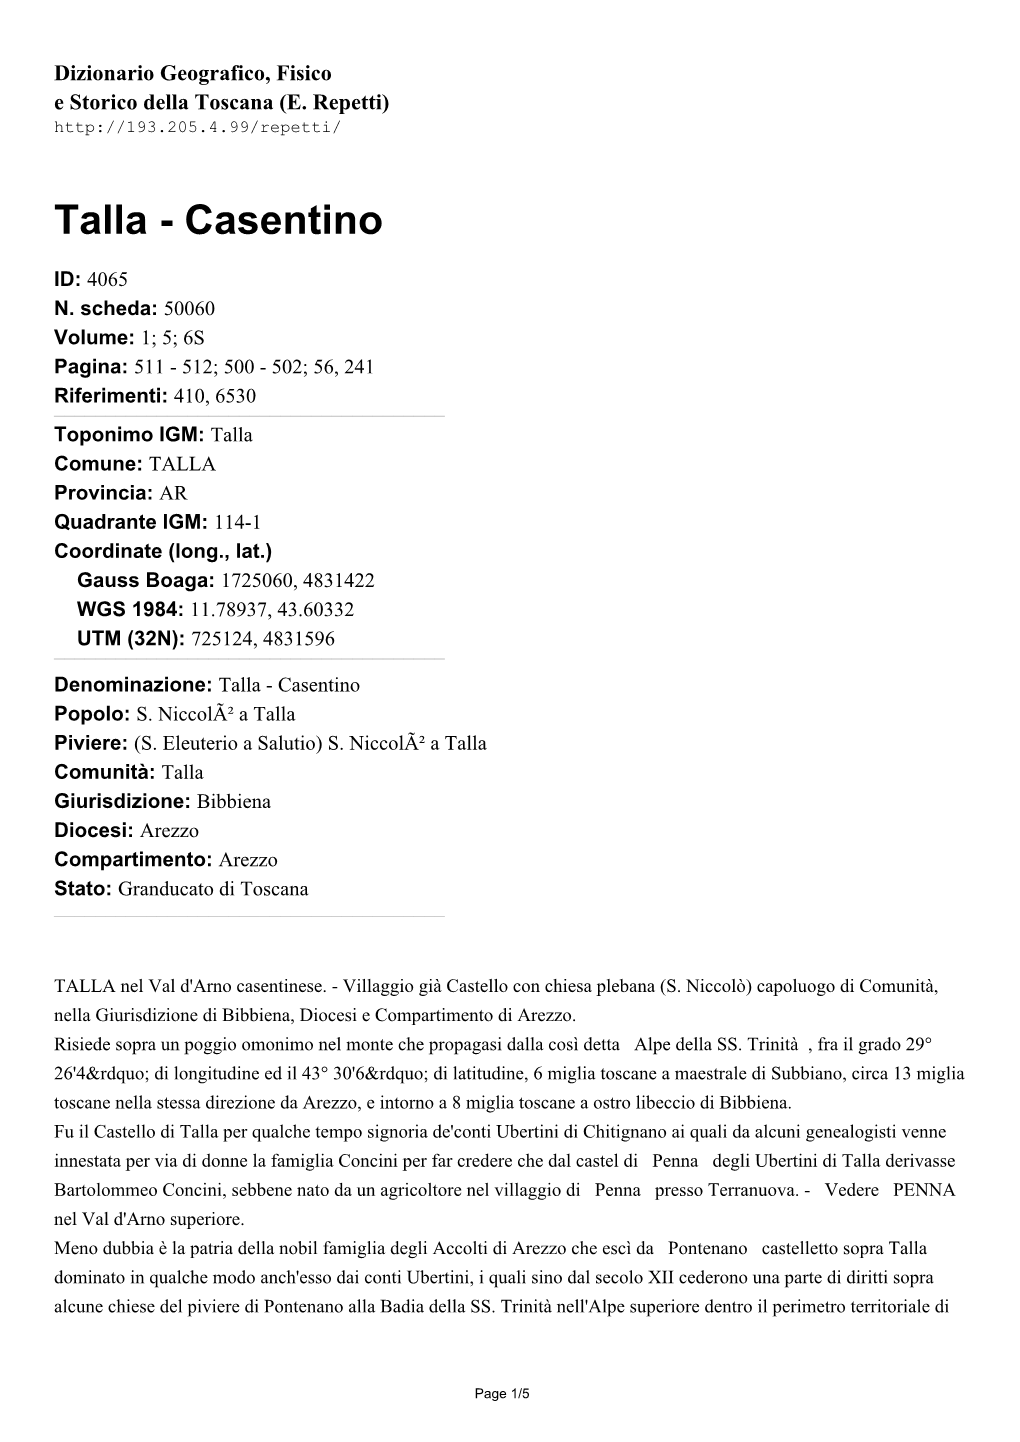 Talla - Casentino